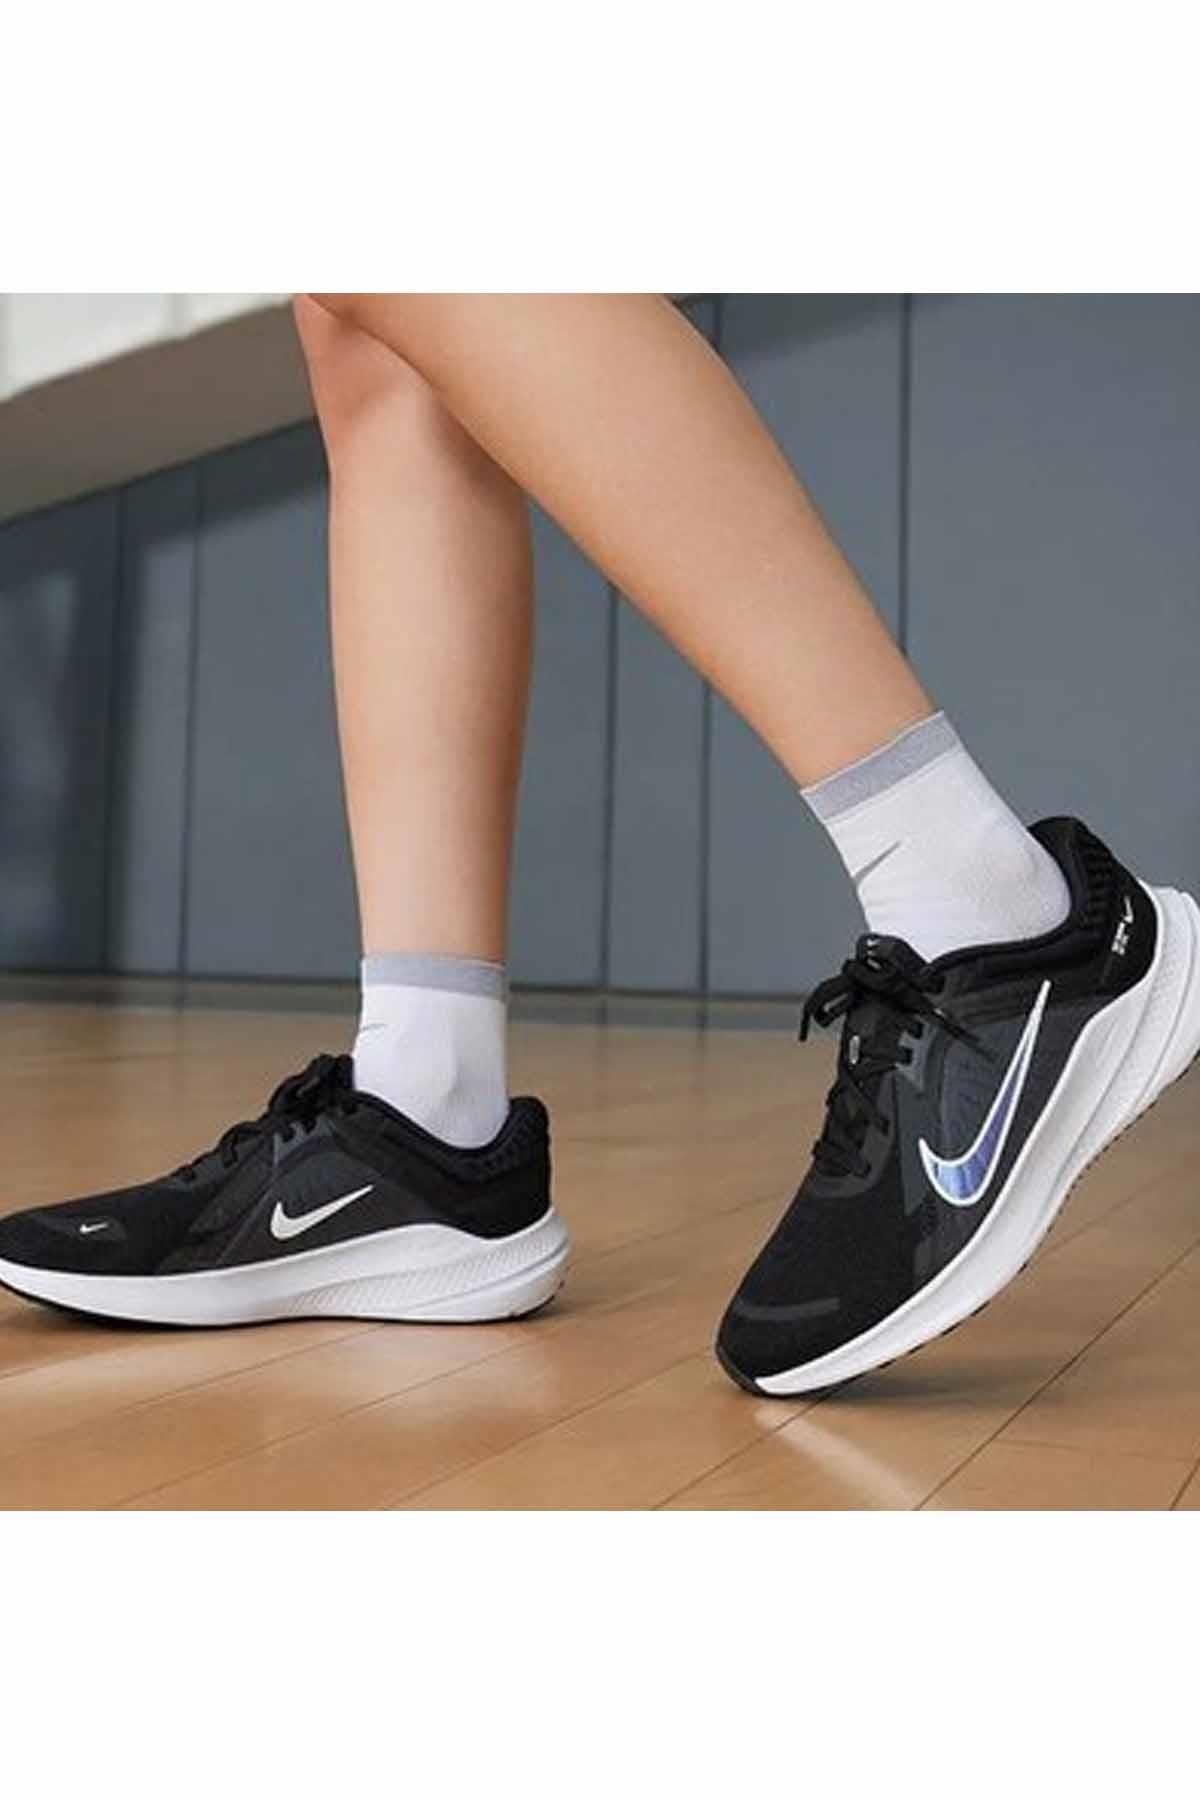 Nike Wmns Quest 5 Running Kadın Yürüyüş Koşu Ayakkabı Dd9291-001-sıyah-byz